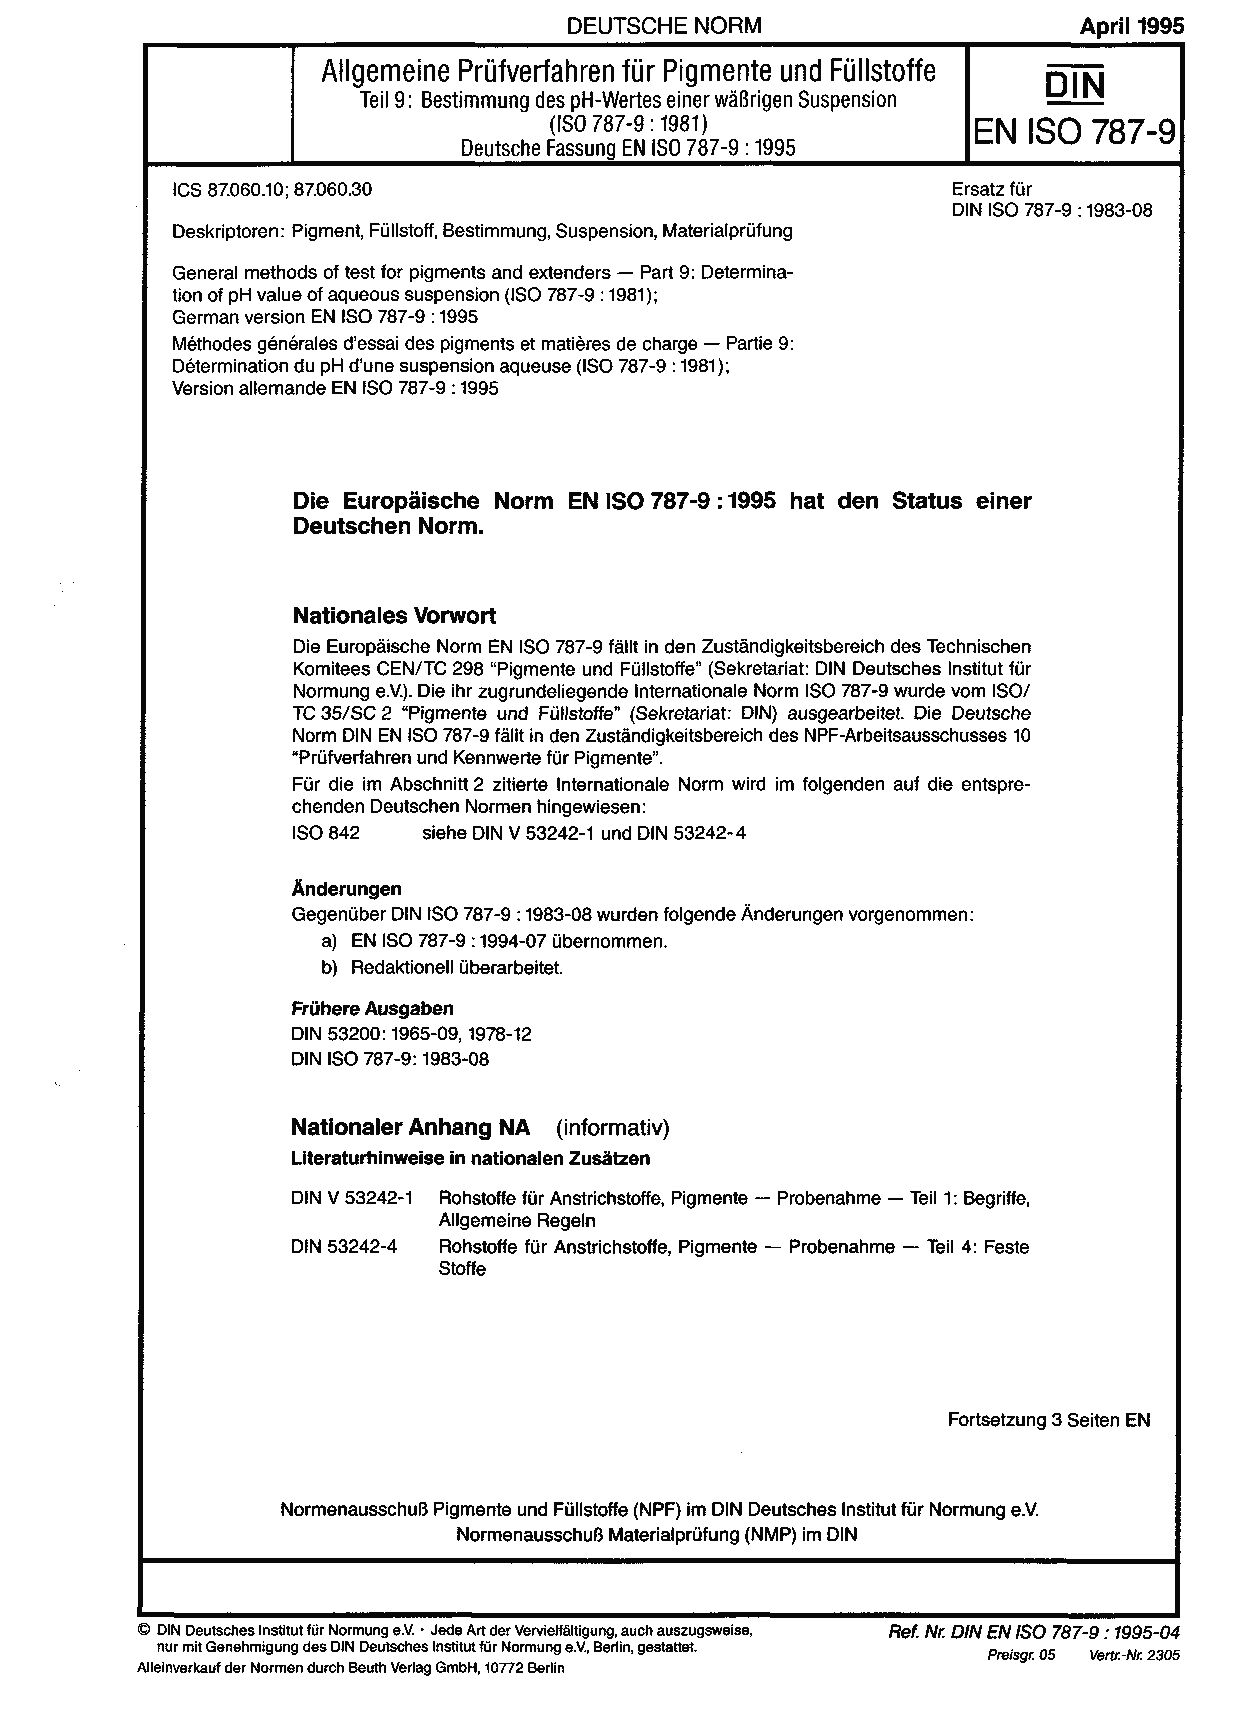 DIN EN ISO 787-9:1995封面图